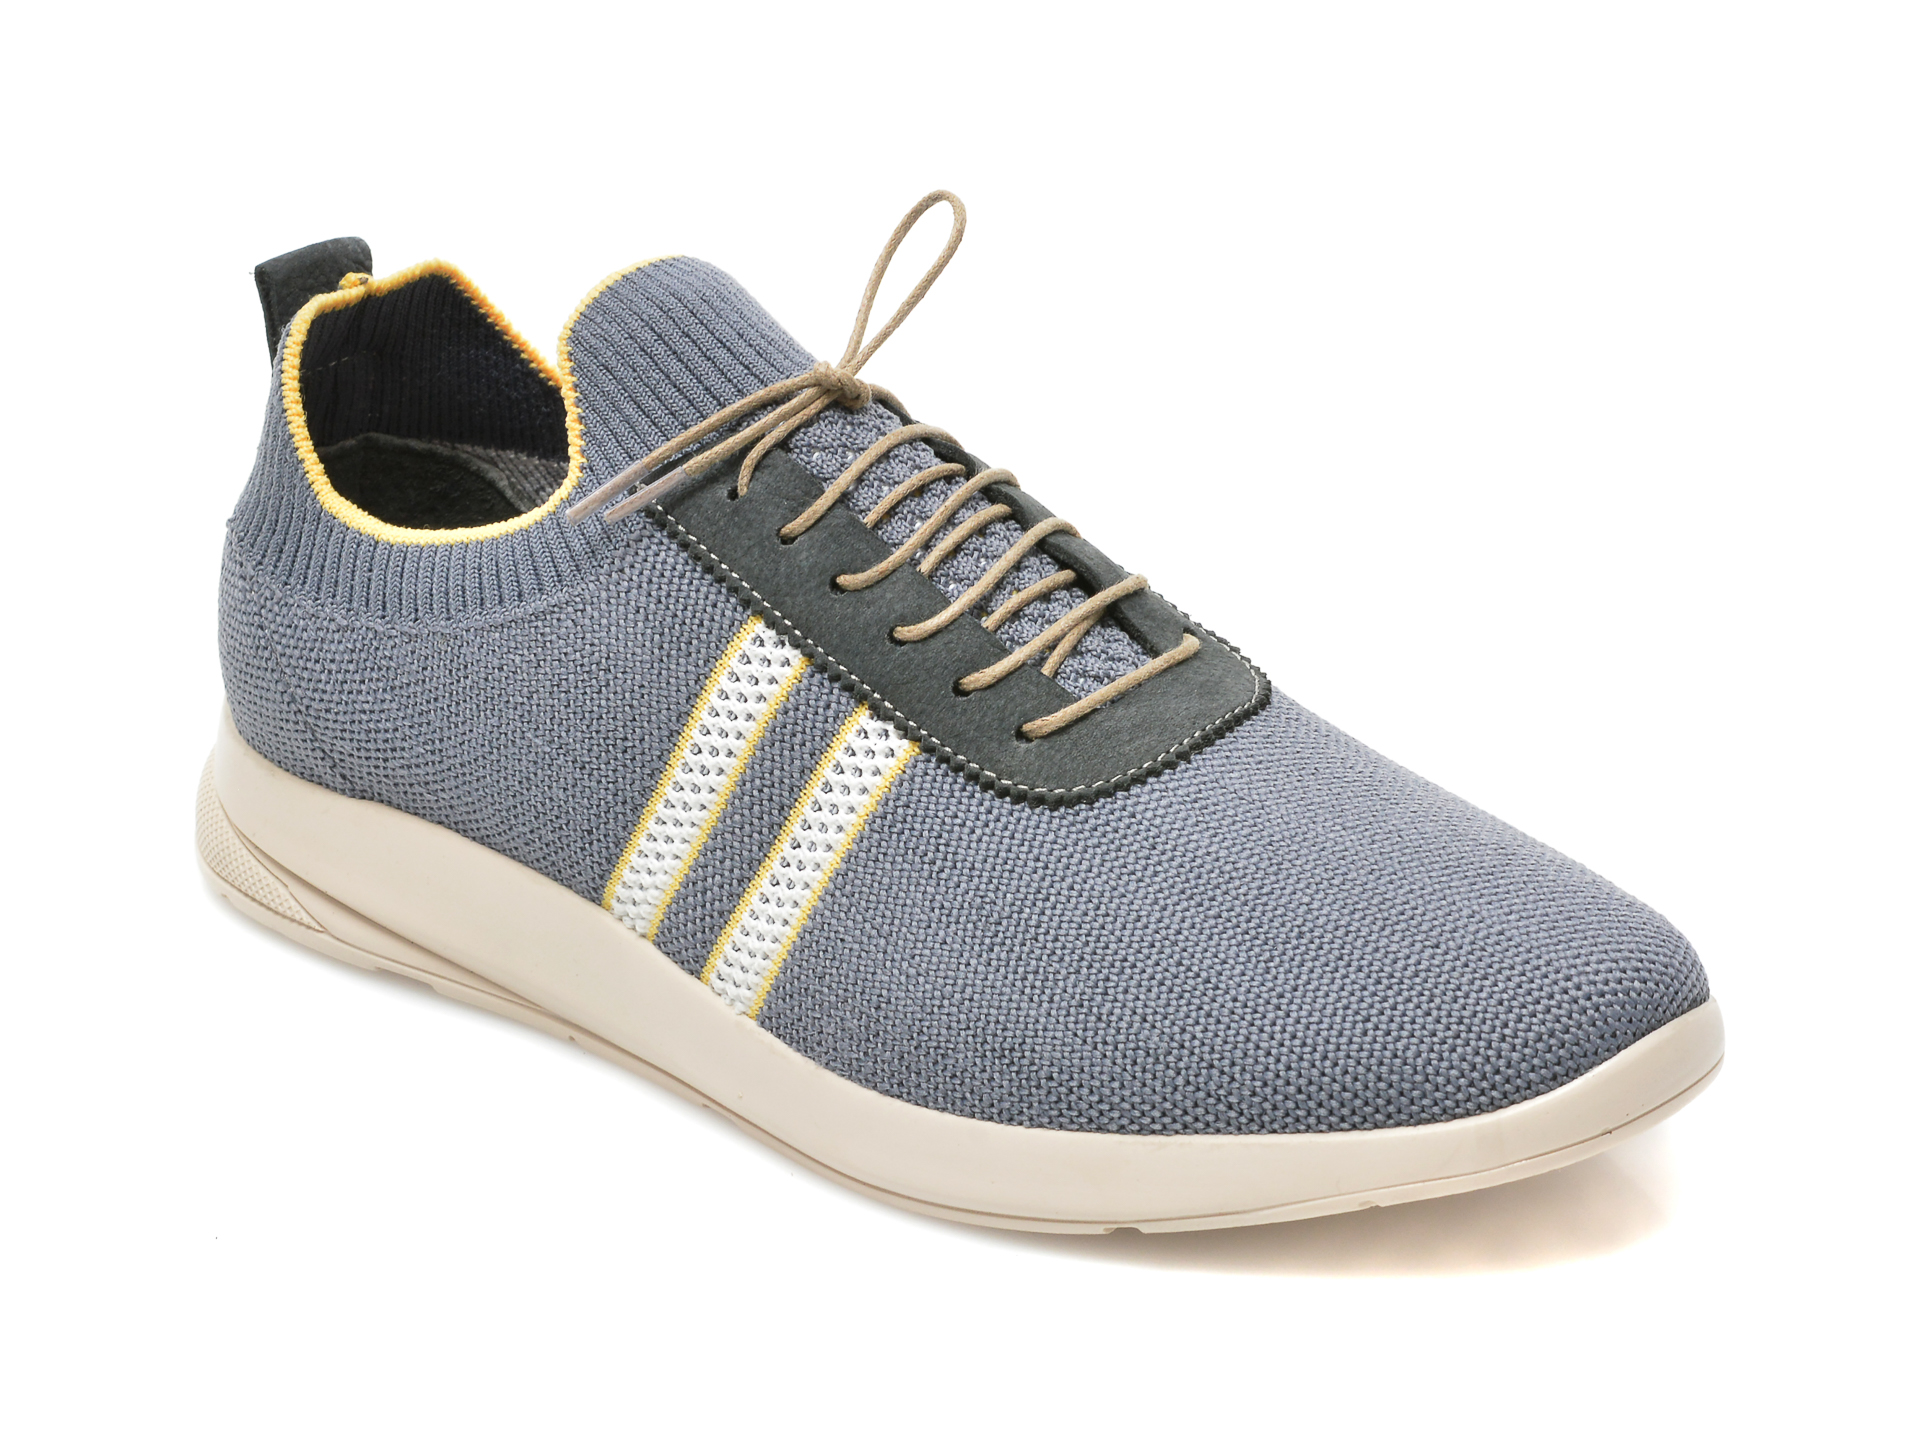 Pantofi sport ENES albastri, 22300, din material textil /barbati/pantofi